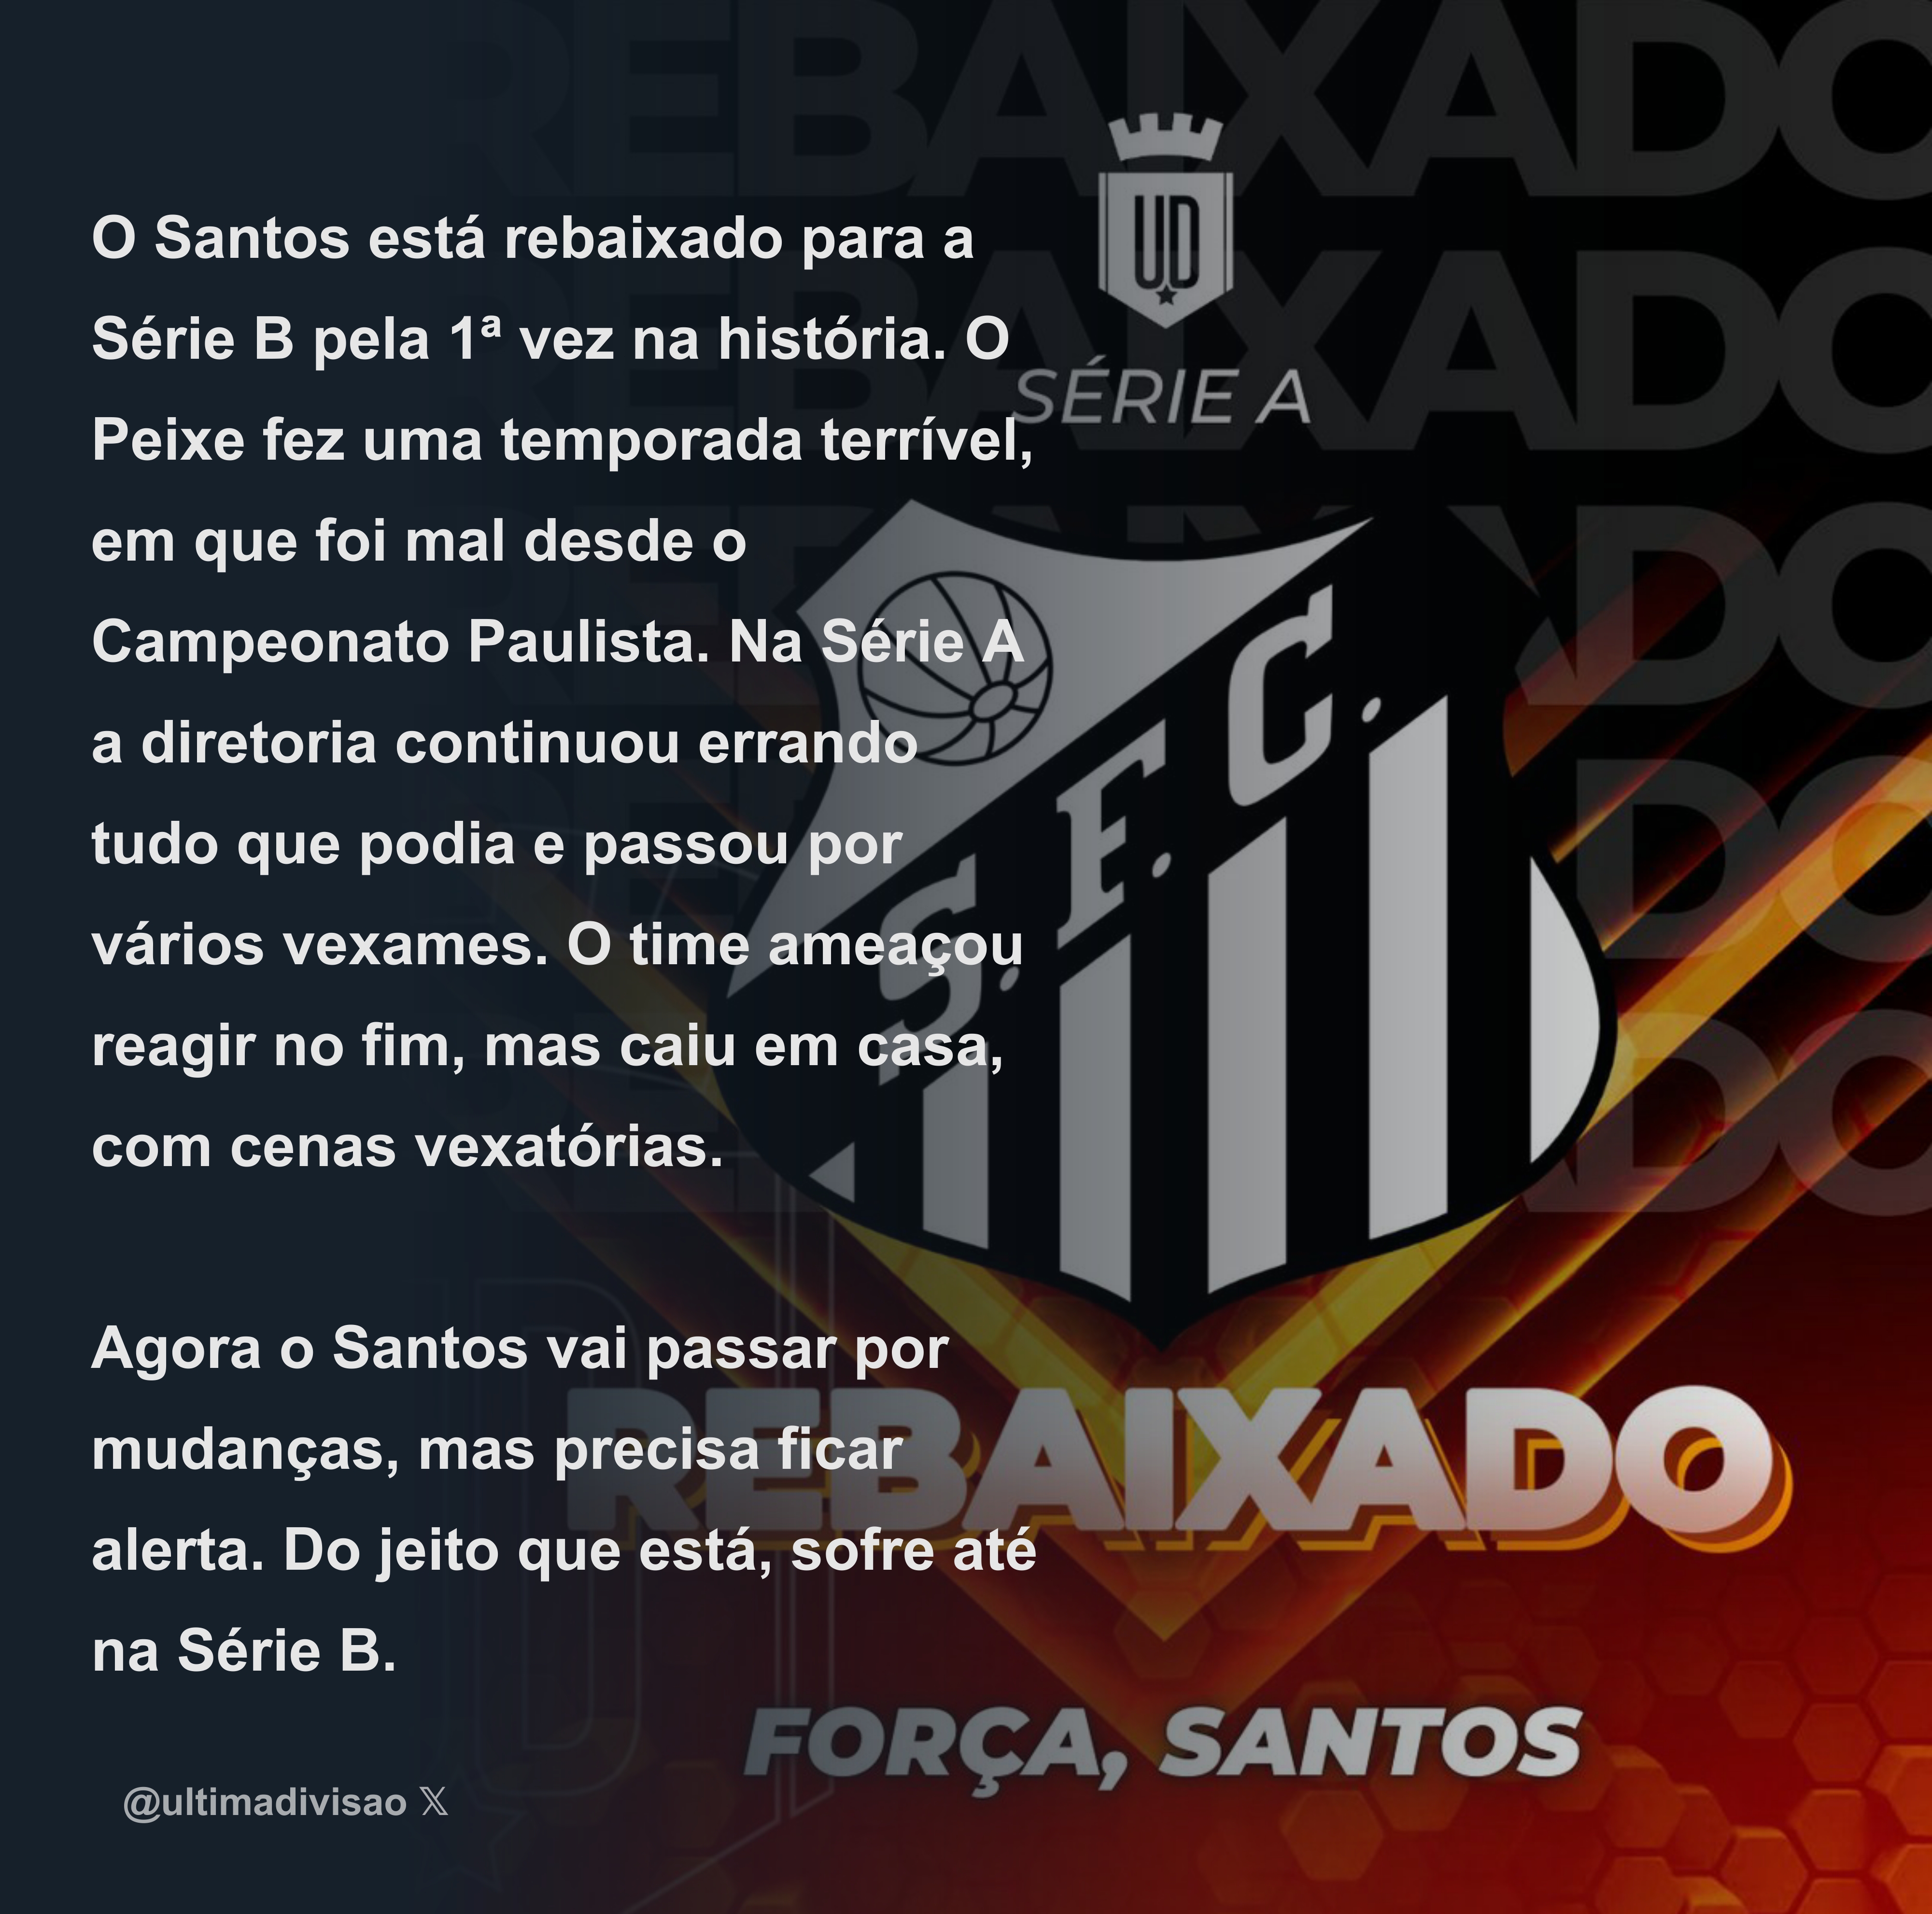 Última Divisão on X: O Santos está rebaixado para a Série B pela